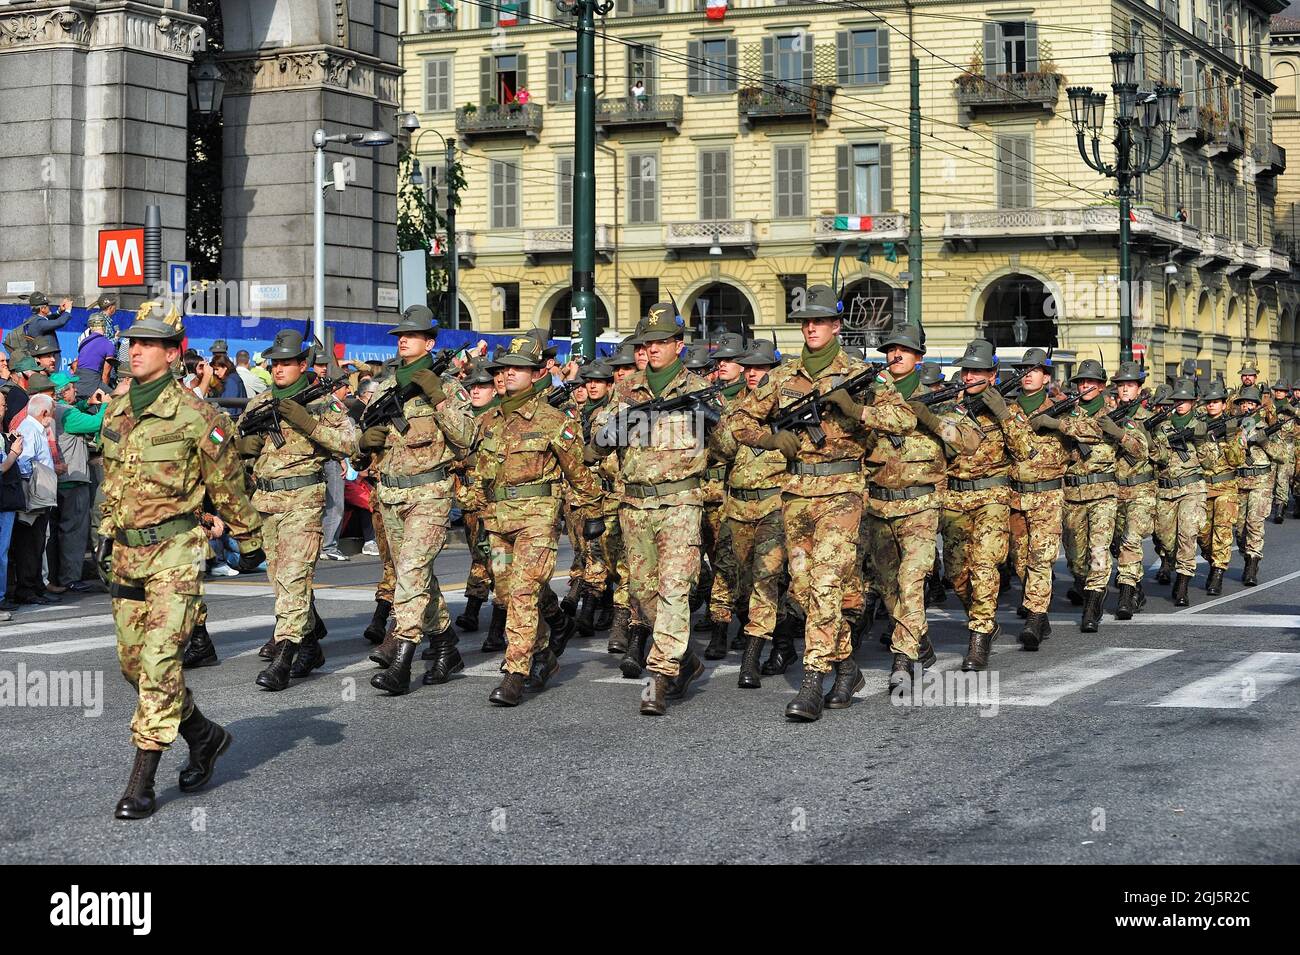 TORINO, ITALIA - 08 maggio 2011: Le forze militari alpine italiane durante la sfilata. Torino, Italia. Foto Stock